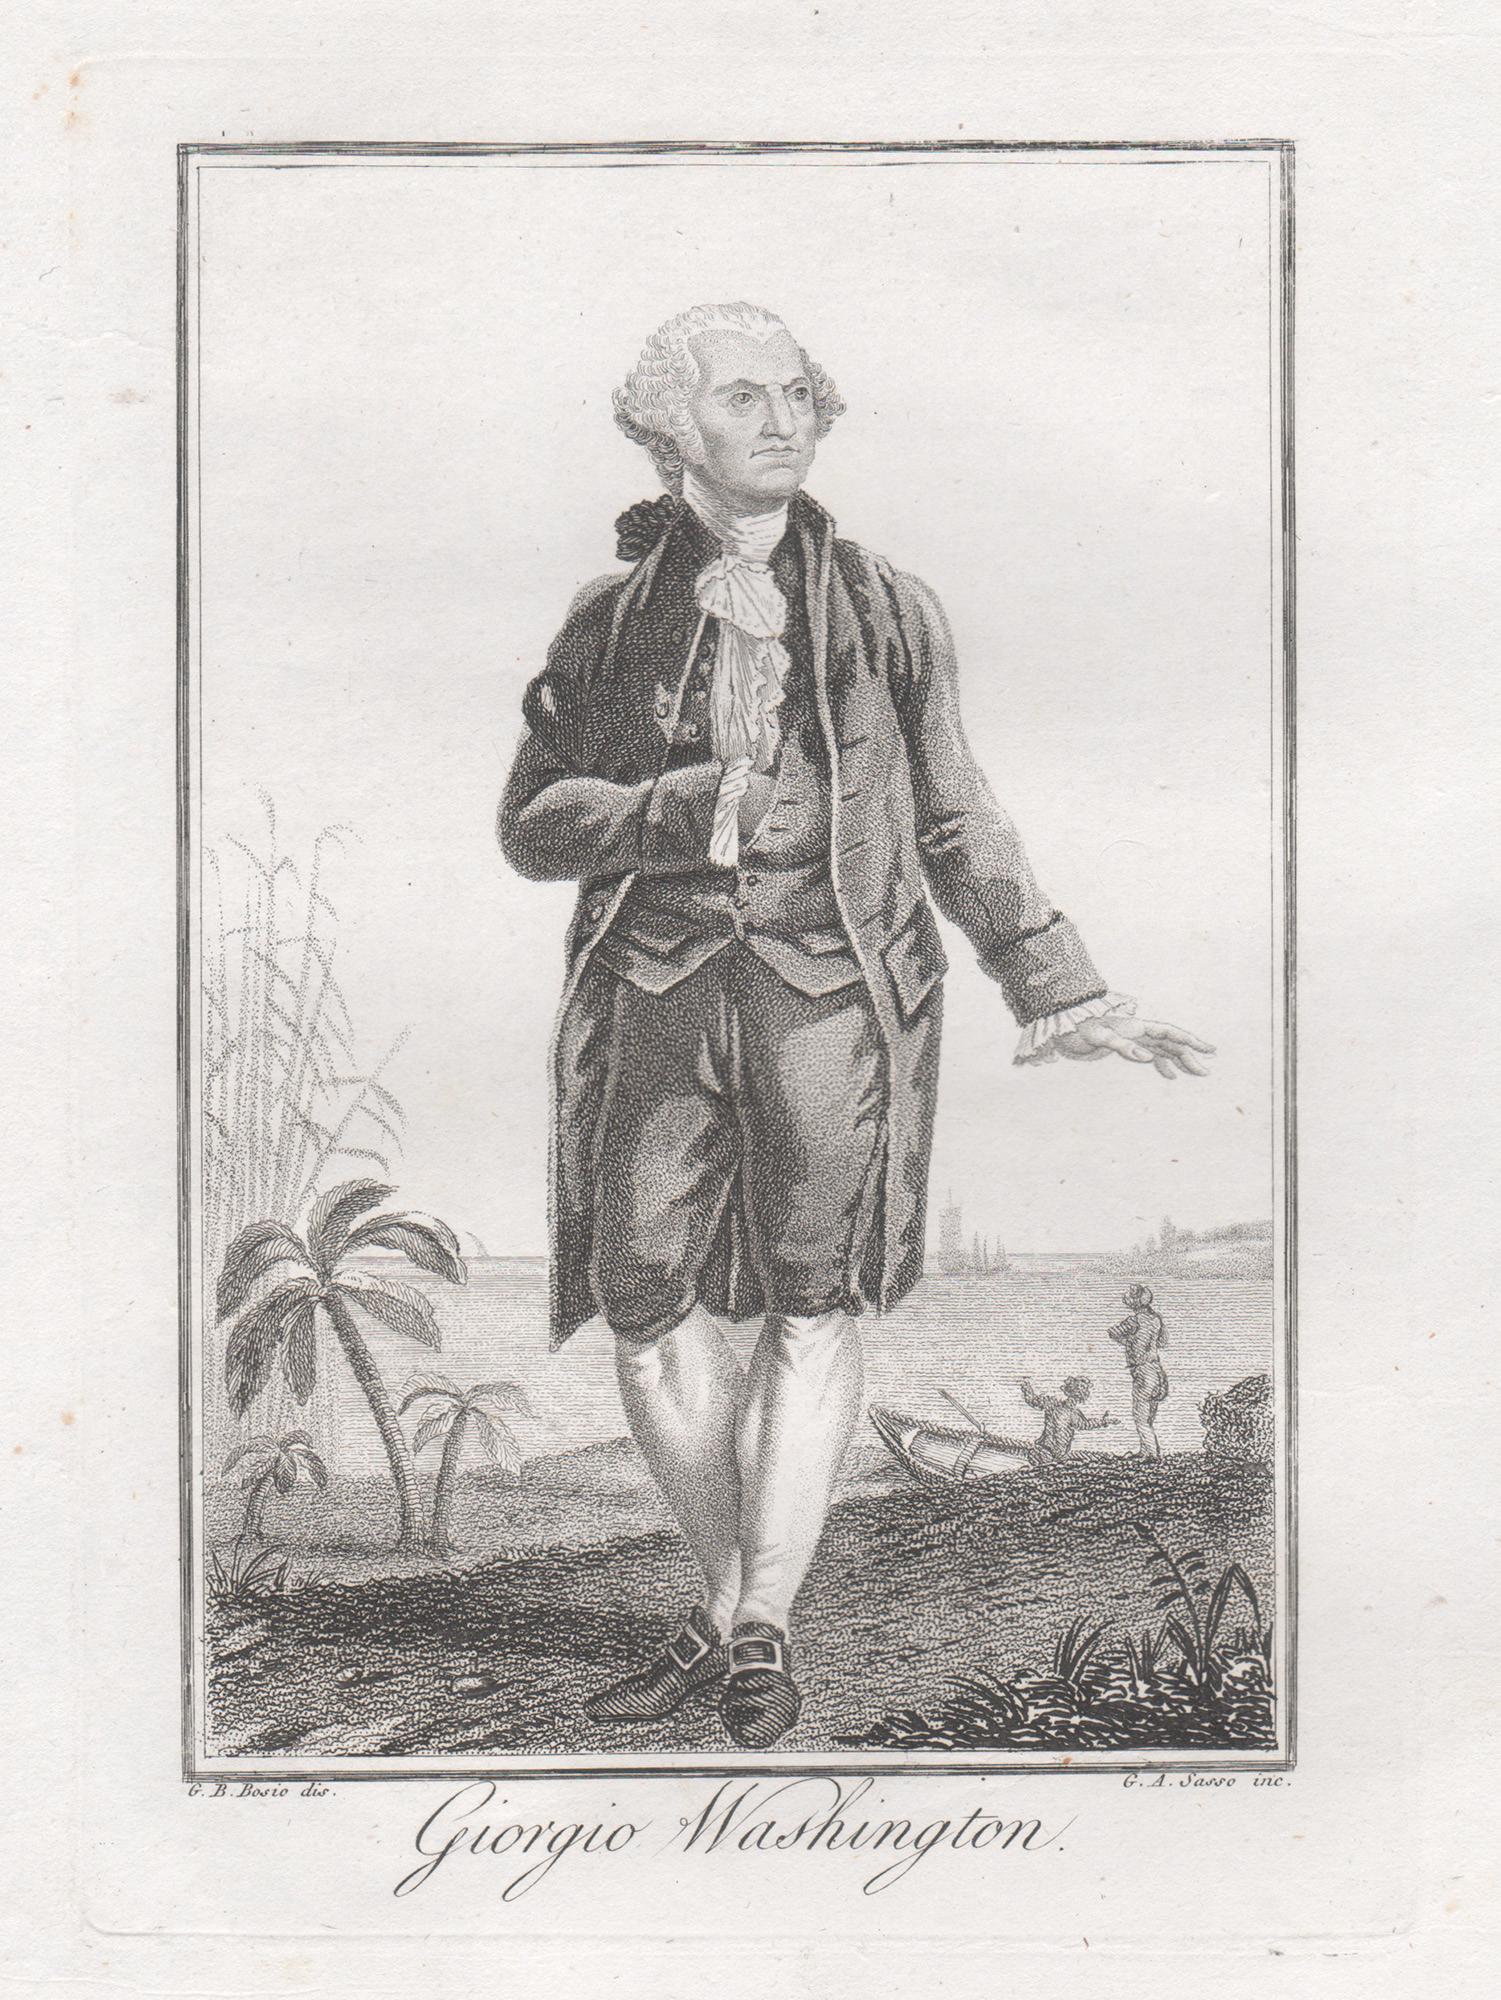 Giovanni Antonio Sasso (active 1809-1816) after Jean Bosio (1767-1832) Portrait Print – Porträtstiche von George Washington aus dem frühen 19. Jahrhundert